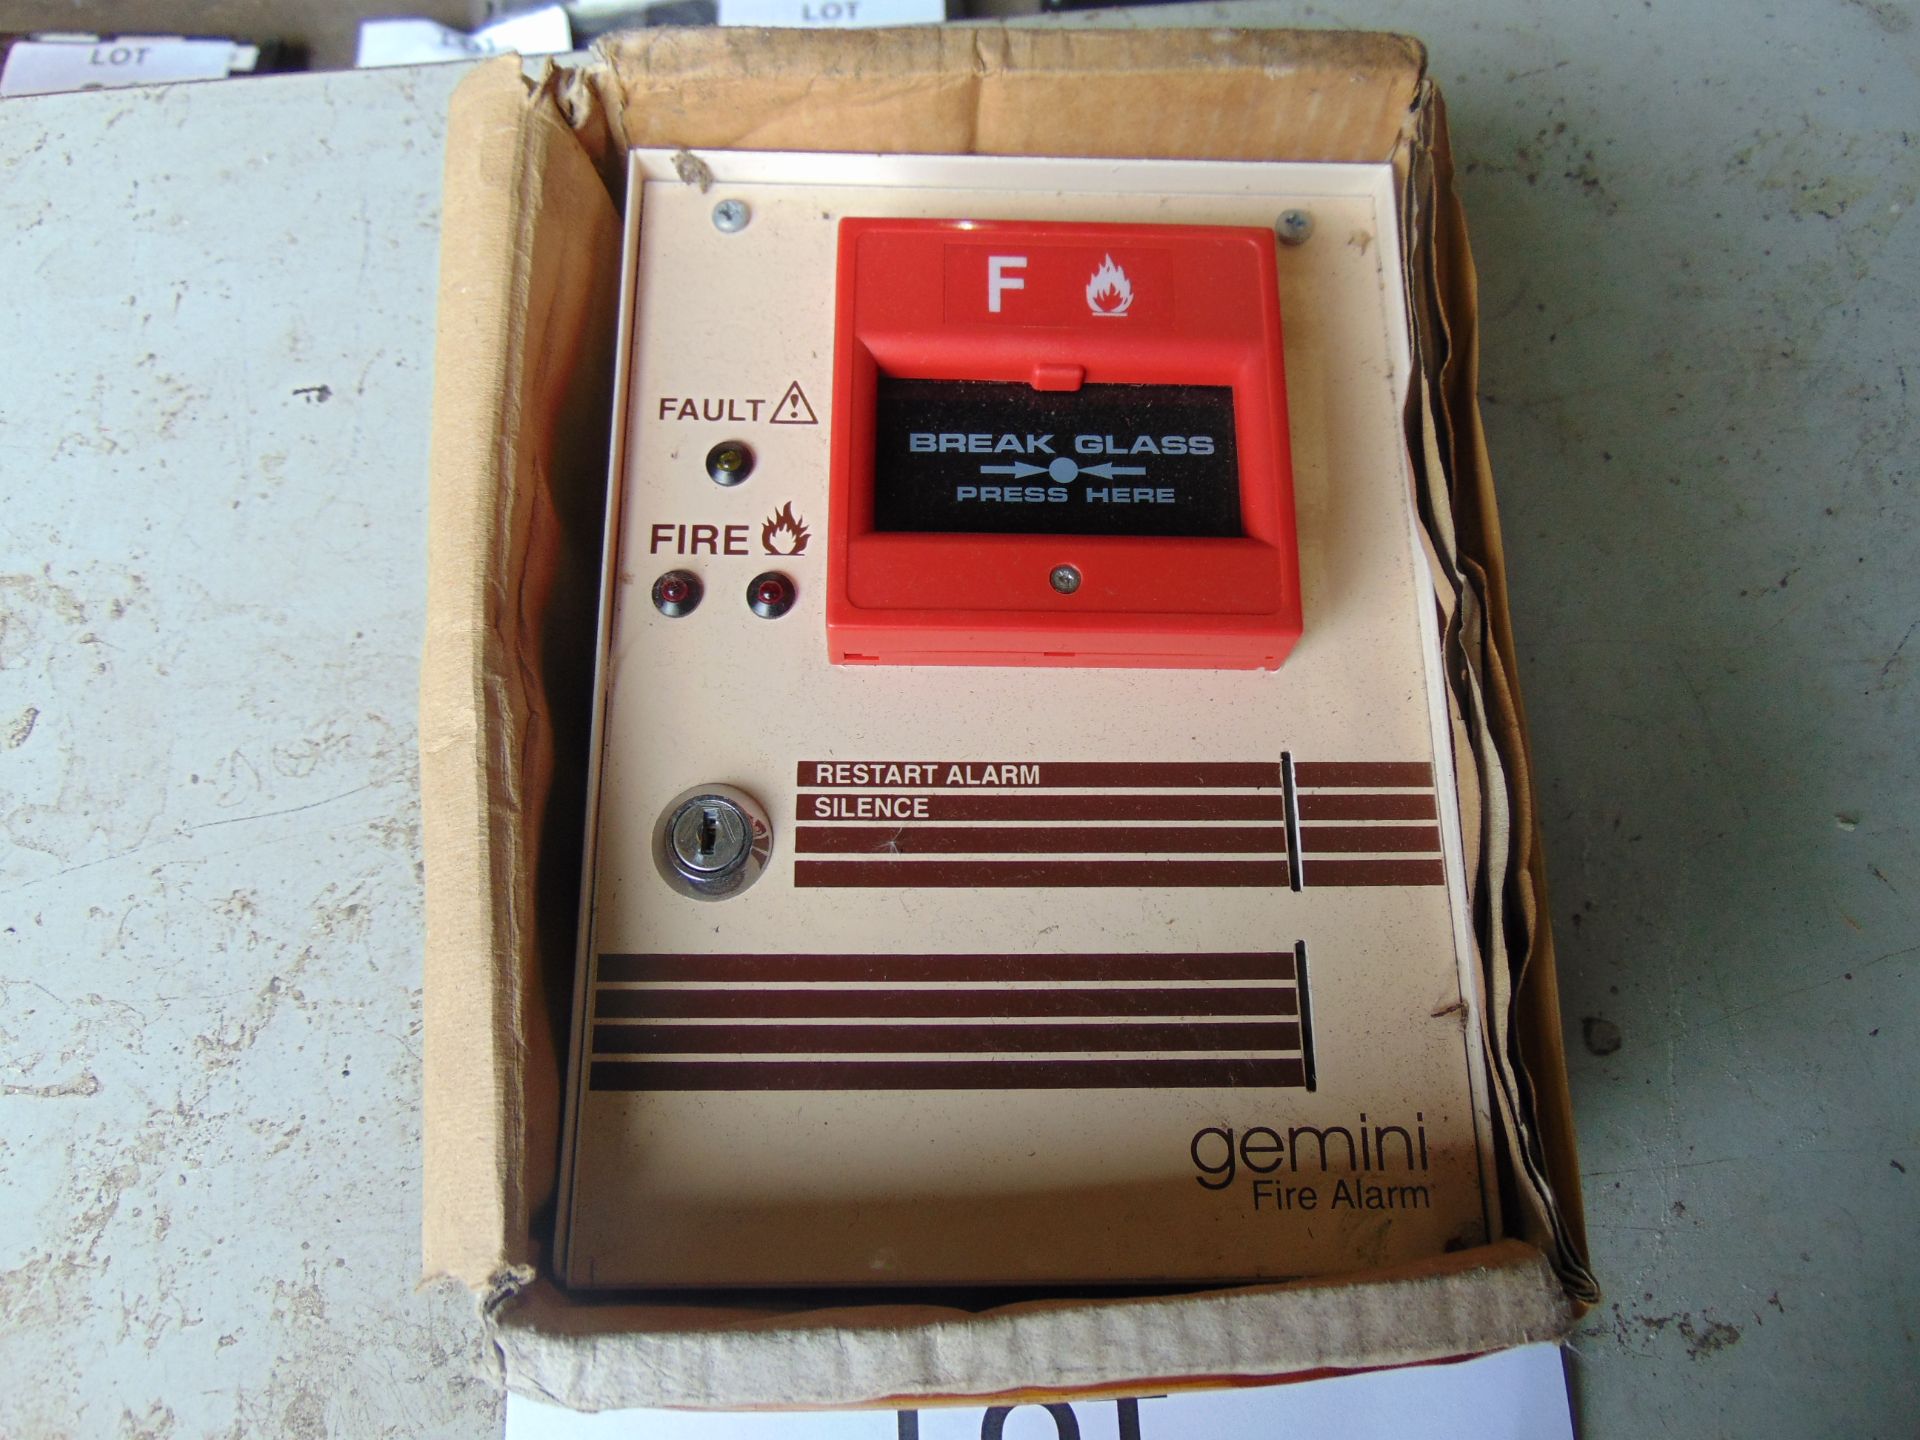 Gemini Fire Alarm - Image 2 of 3